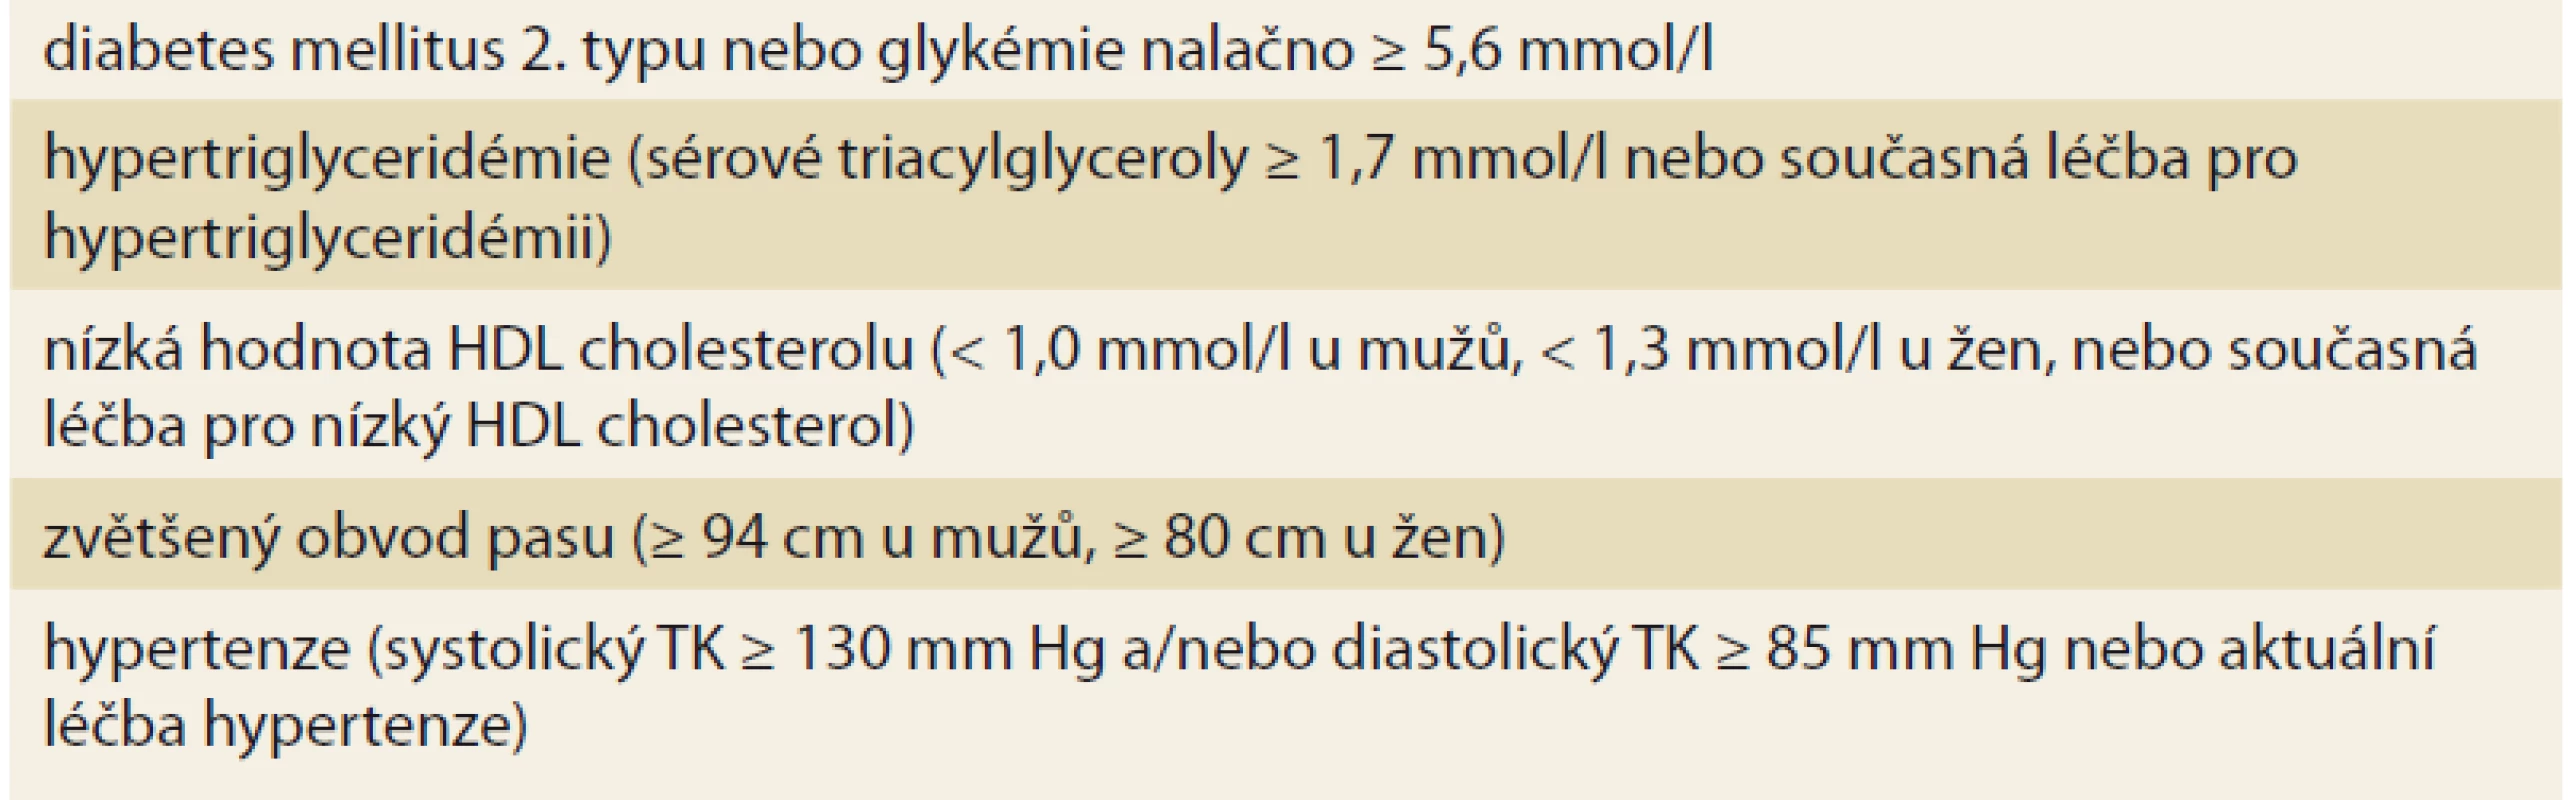 Diagnostická kritéria metabolického syndromu (nutná tři kritéria z následujících
pěti).<br>
Tab. 1. Diagnostic criteria of metabolic syndrome (three criteria out of five
required).